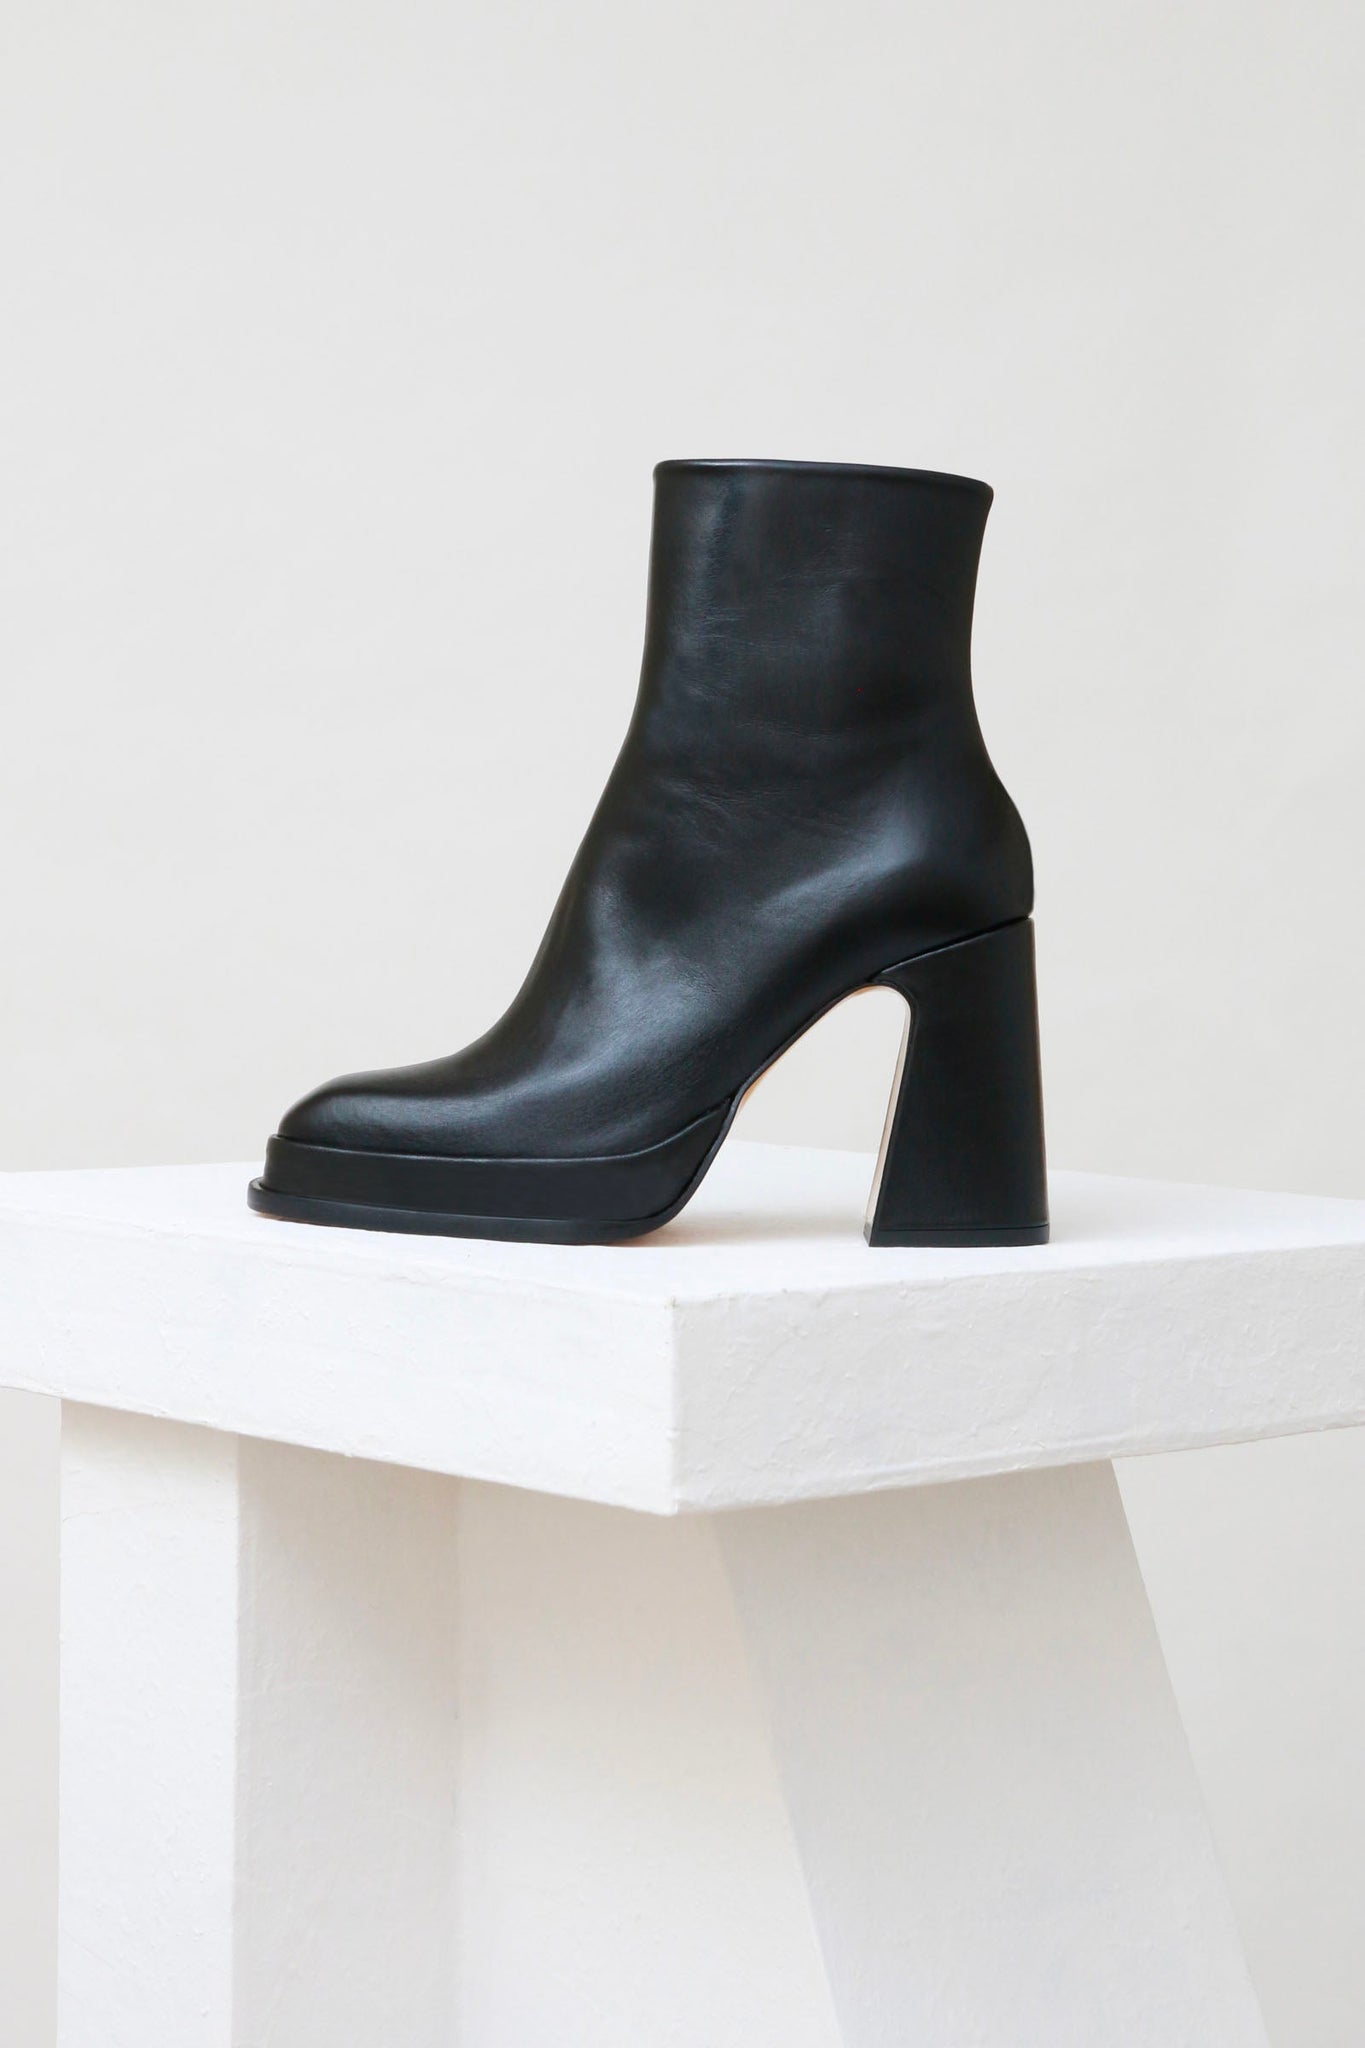 Souliers Martinez Shoes CHUECA - Black Leather Platform Boots 